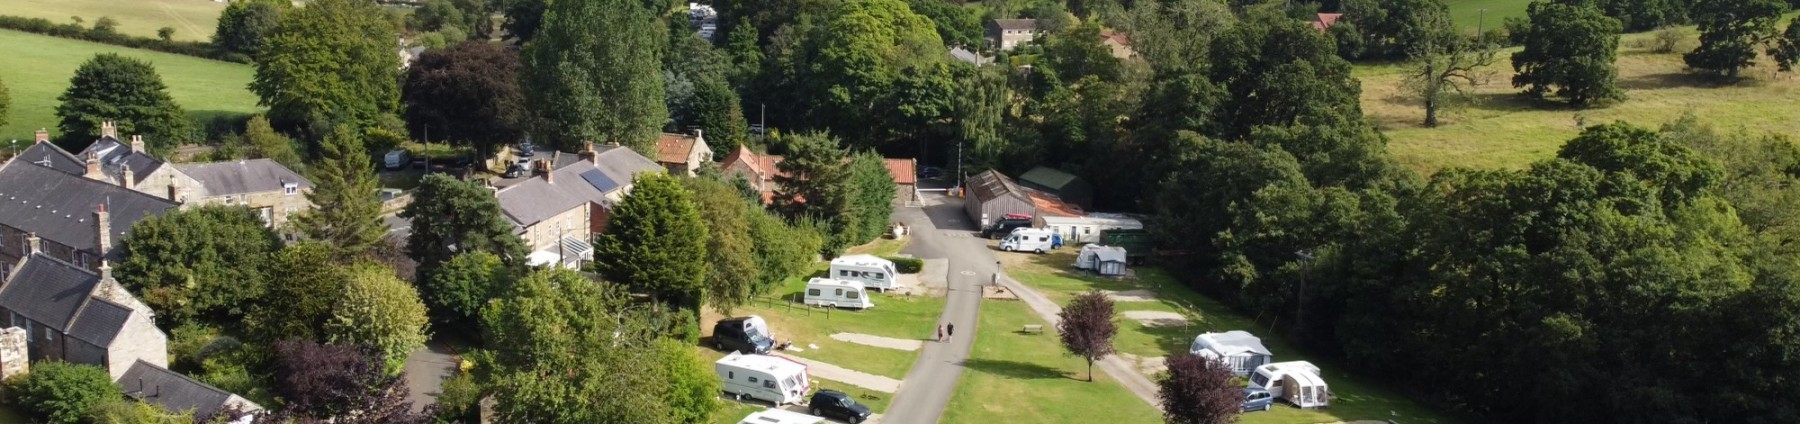 Aerial view_Rosedale Abbey Caravan Park (2)